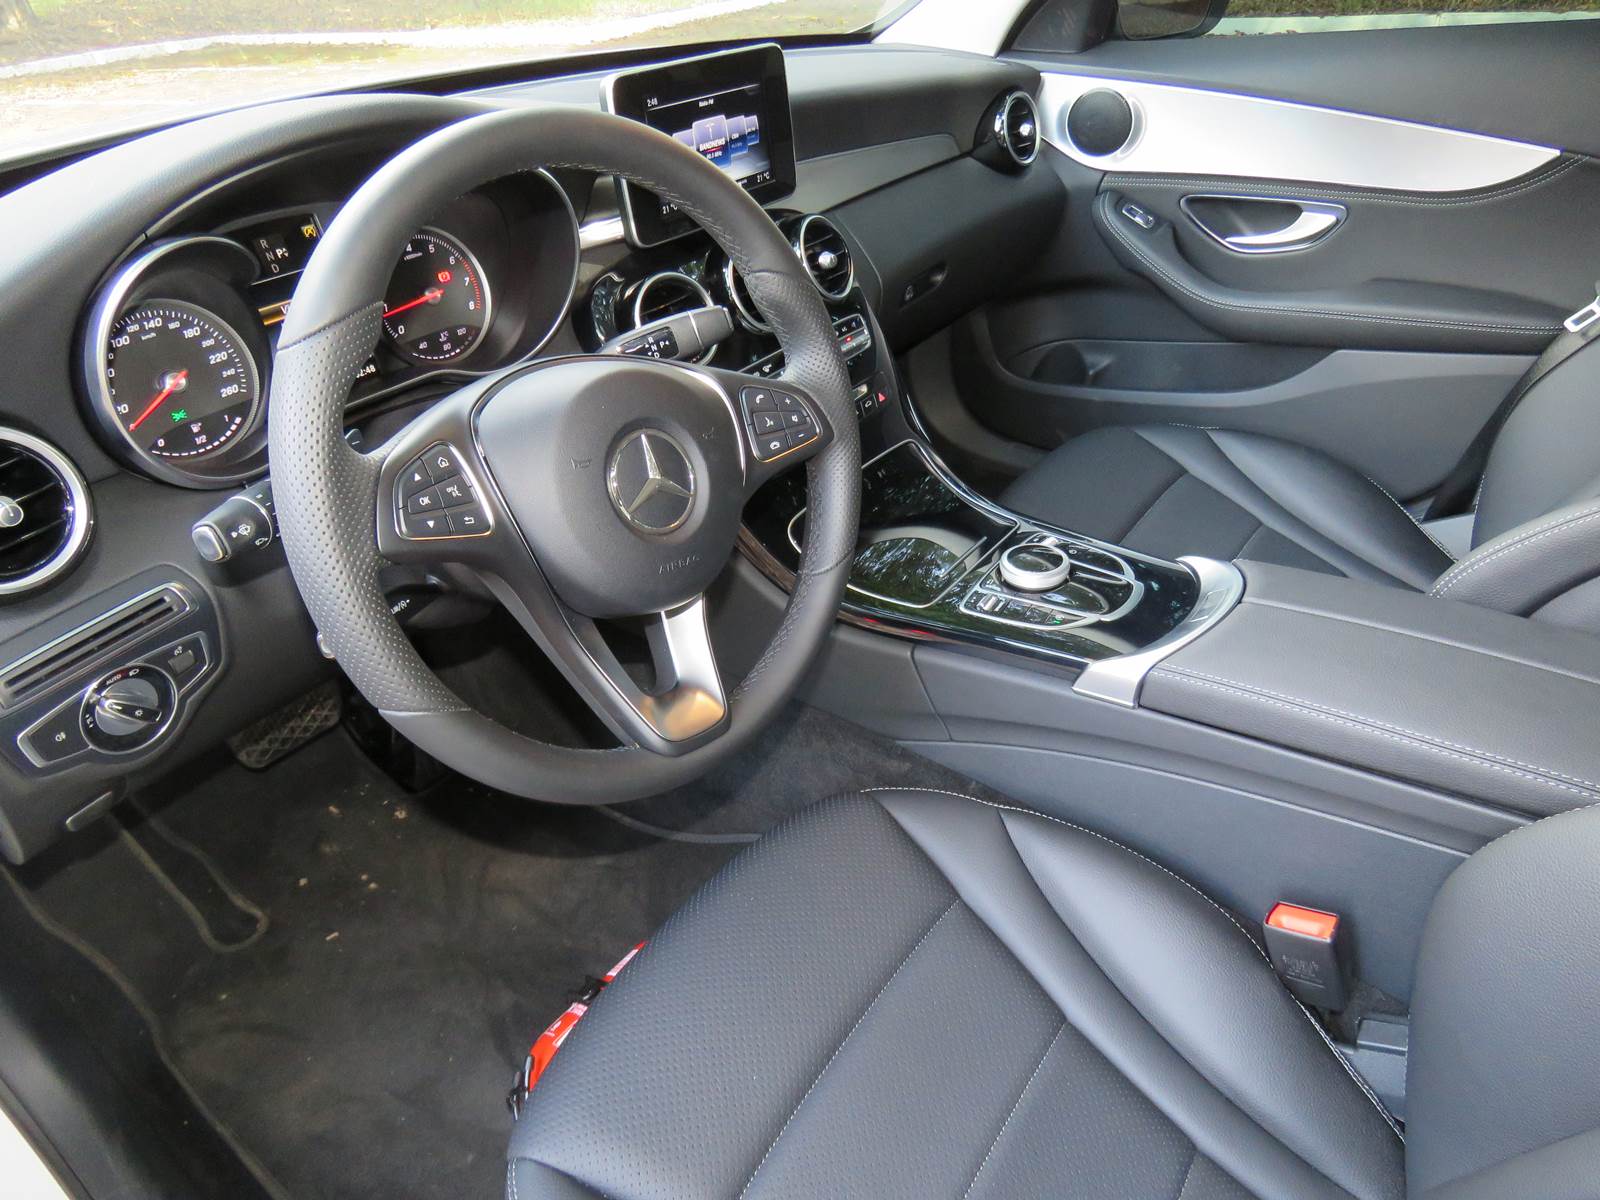 Mercedes-Benz C180 flex 2017 - interior